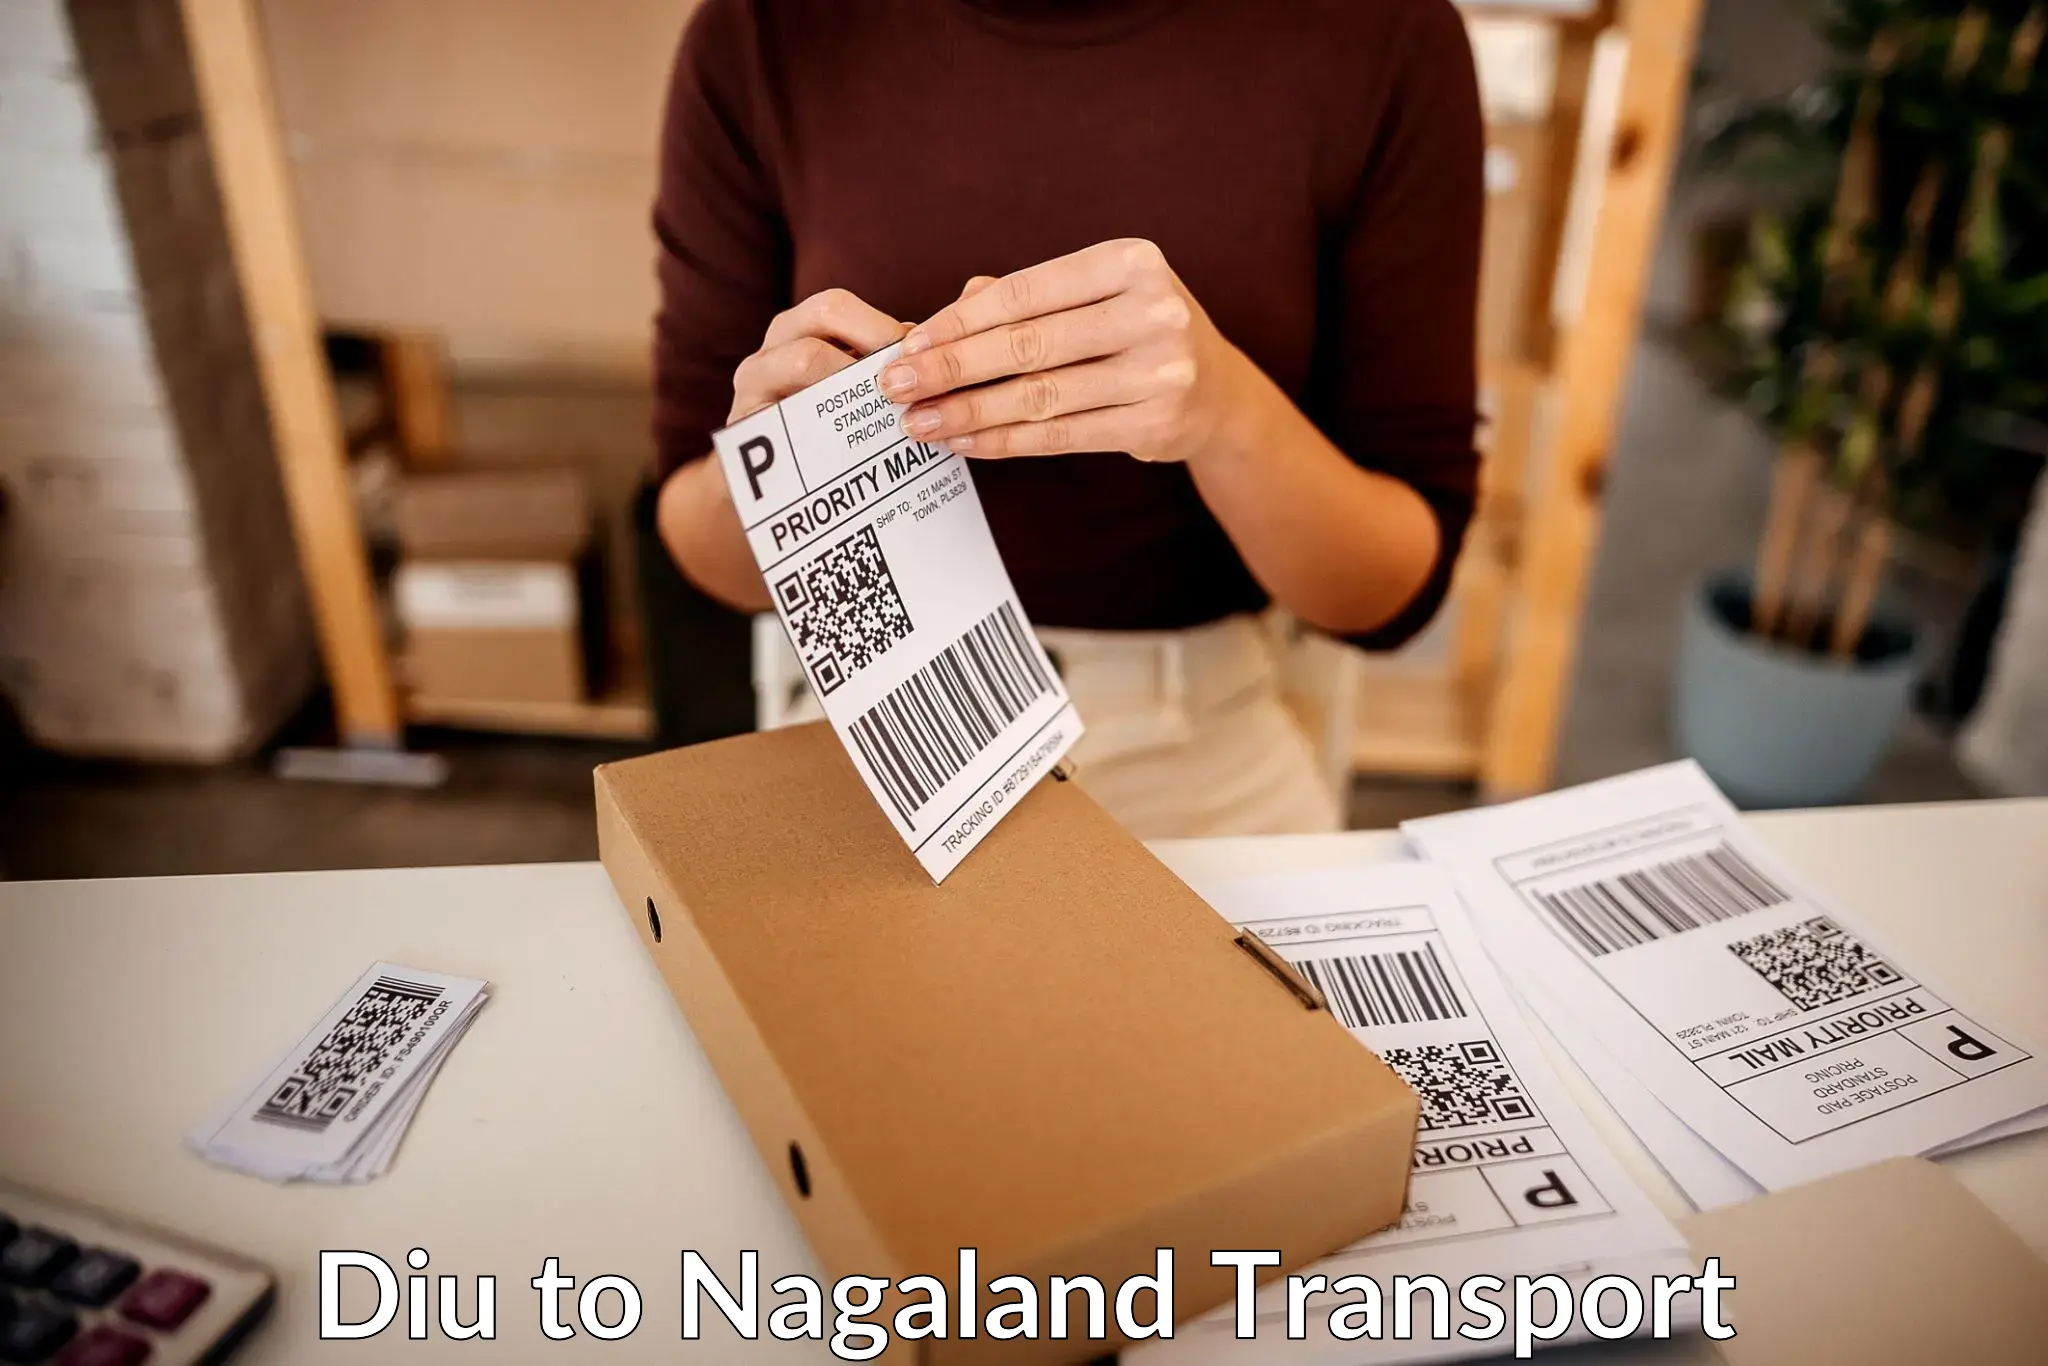 Express transport services Diu to NIT Nagaland